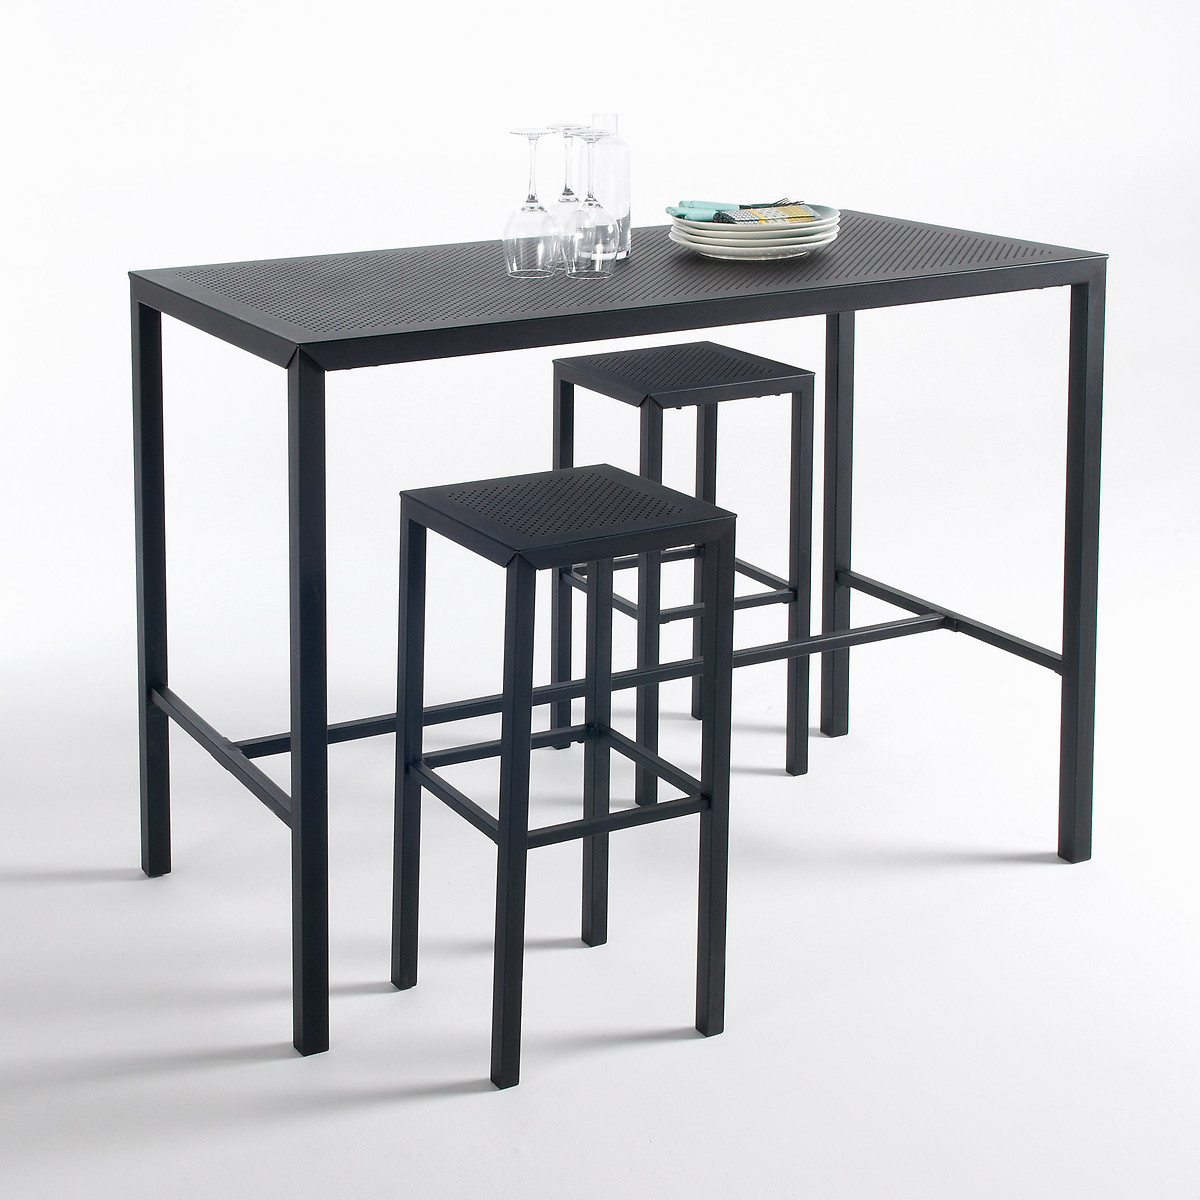 Столик высокий из перфорированного металла Choe единый размер черный столик высокий садовый из акации joemie единый размер черный